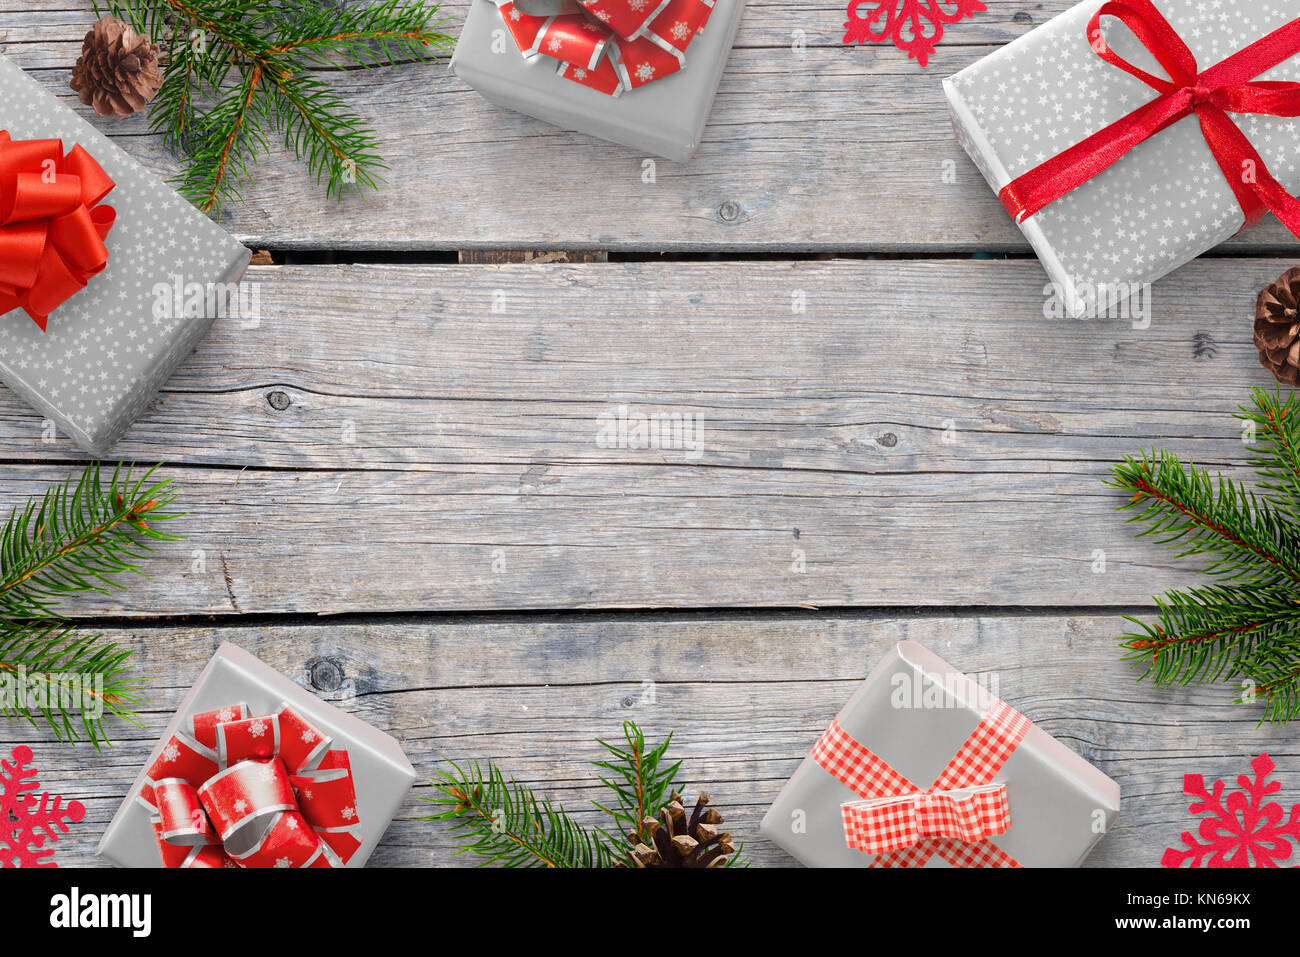 Décorations de Noël sur la table en bois avec espace libre pour le texte. Branches de sapin, cadeaux, punecones. Vue d'en haut. Banque D'Images